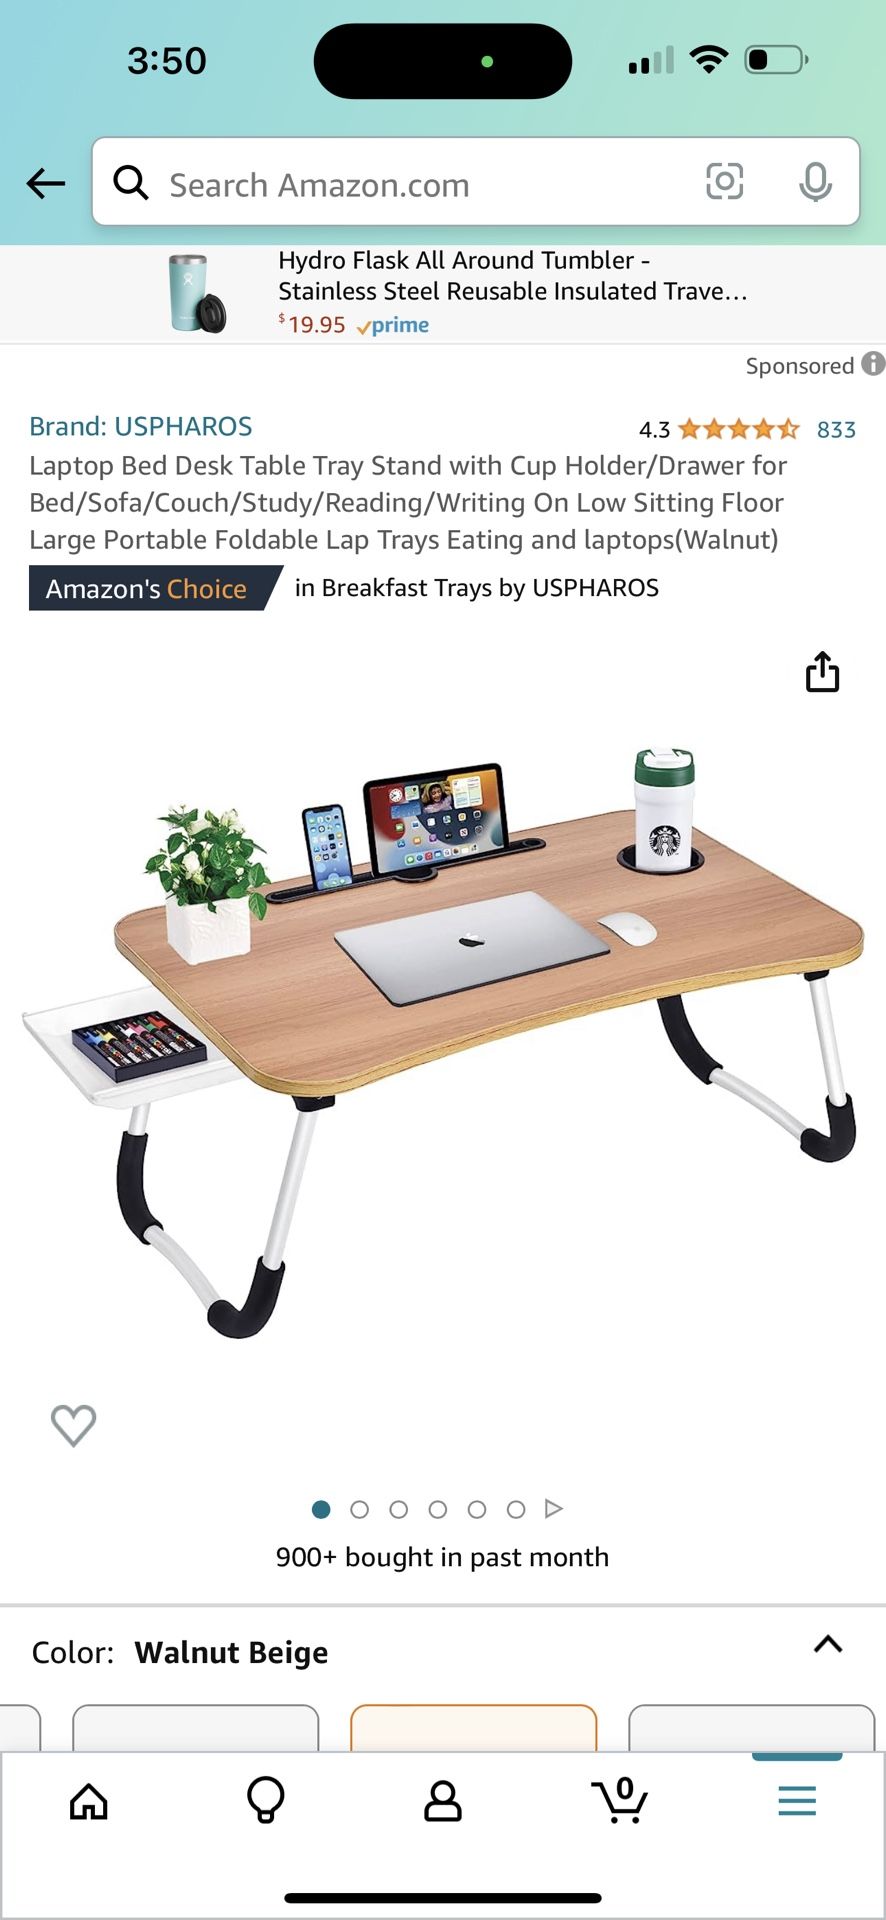 Lap Desk